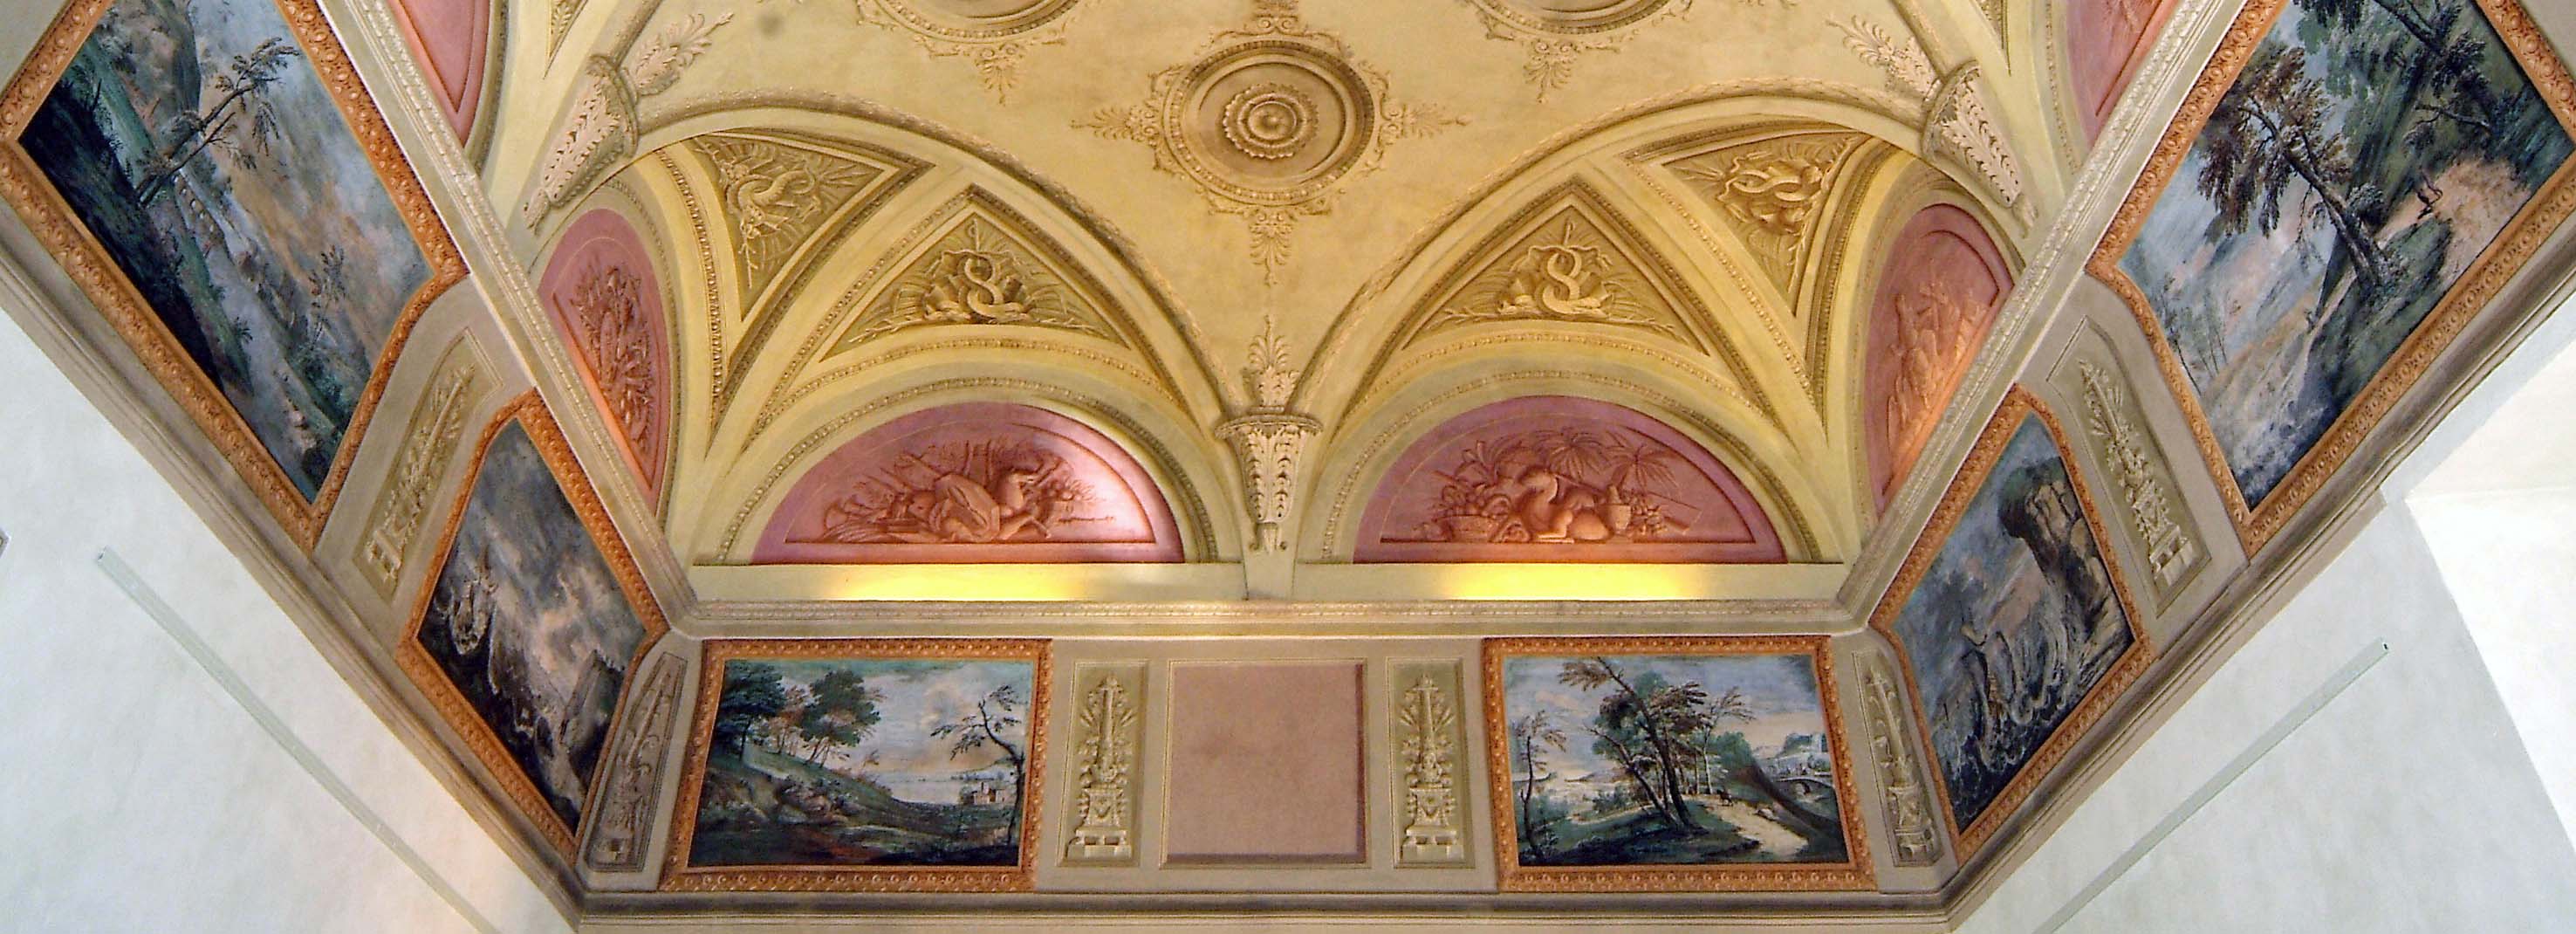 La sala dei paesaggi del Castello Estense
